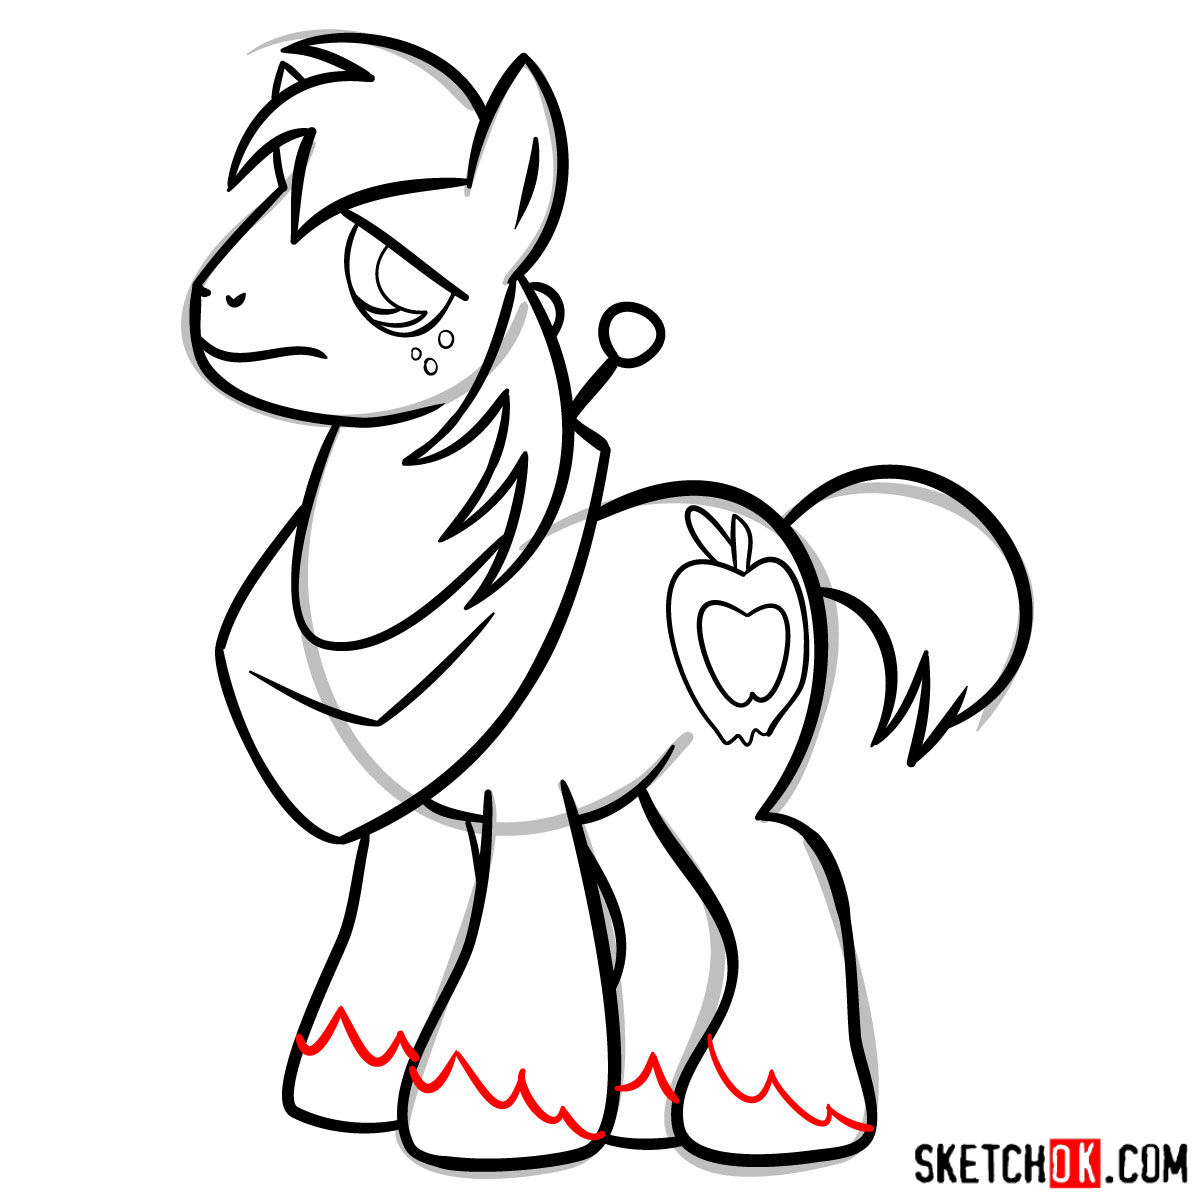 How to draw Big MacIntosh pony - step 12